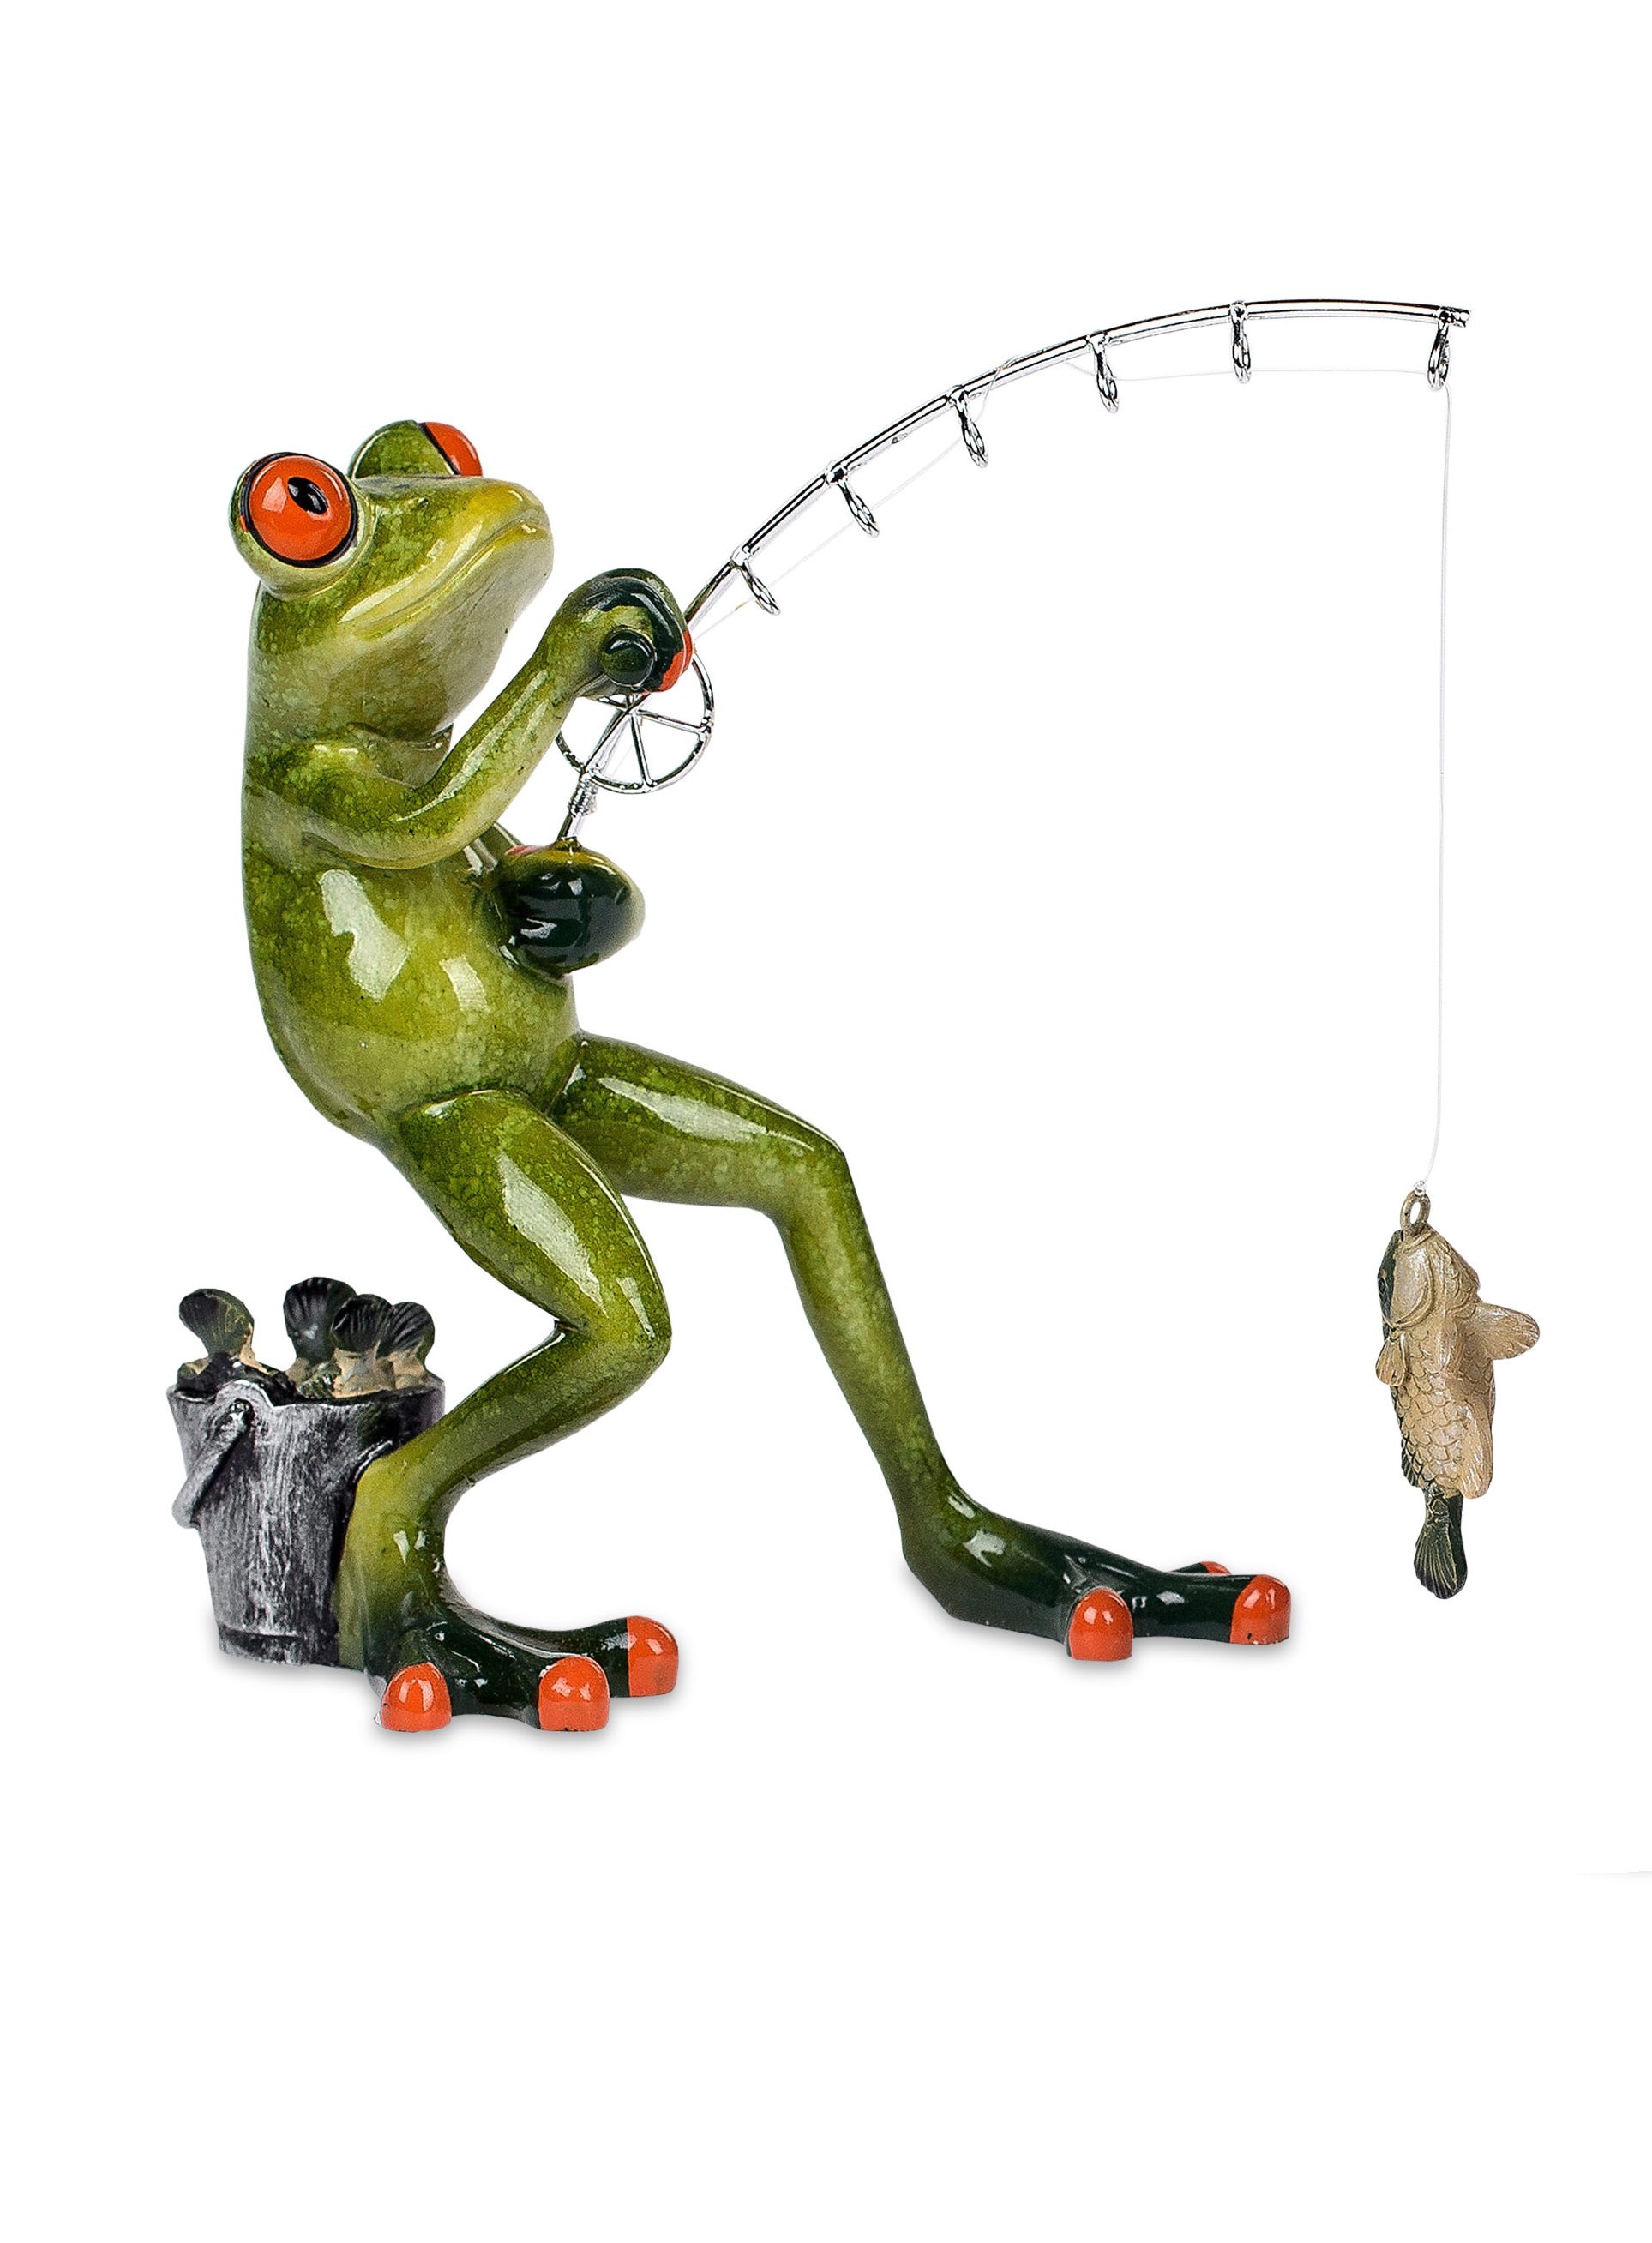 Deko-Figur Frosch Angler stehend 18cm witzige Dekofigur Formano